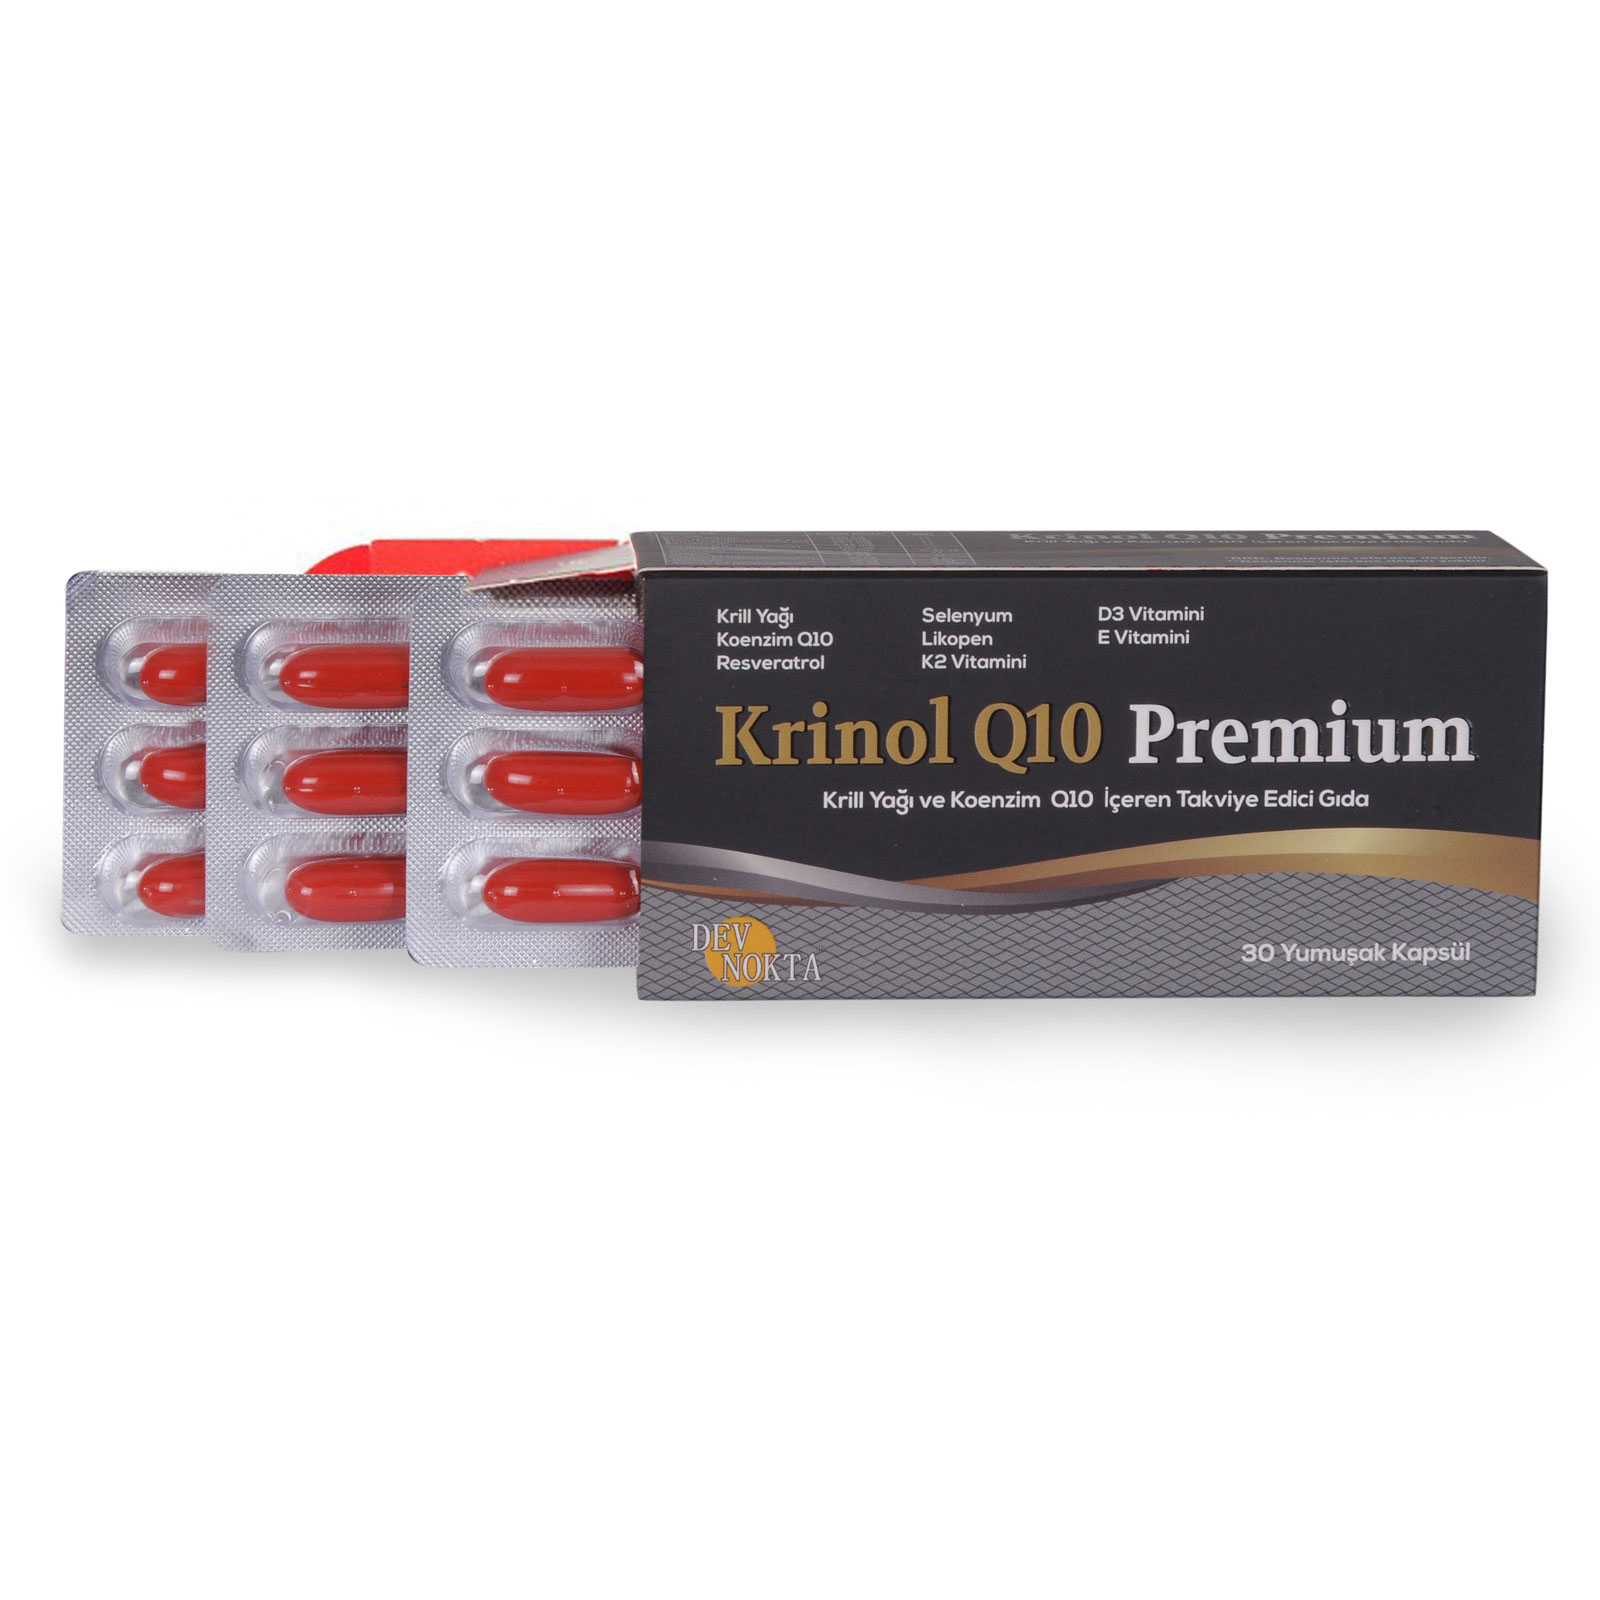 Krinol Q10 Premium - Krill Yağı Ve Koenzim Q10 - 30 Kapsül-1 Kutu